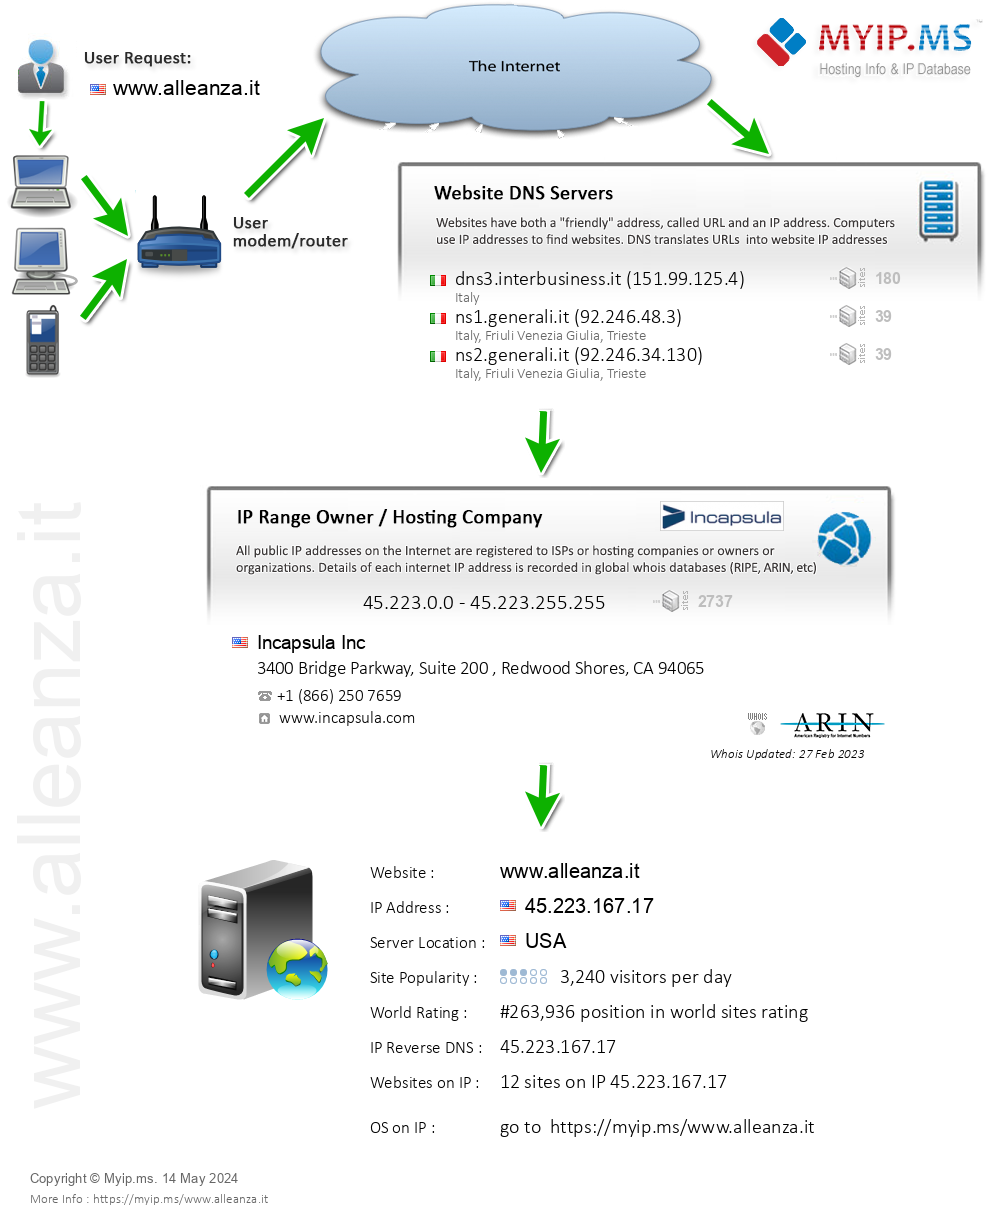 Alleanza.it - Website Hosting Visual IP Diagram